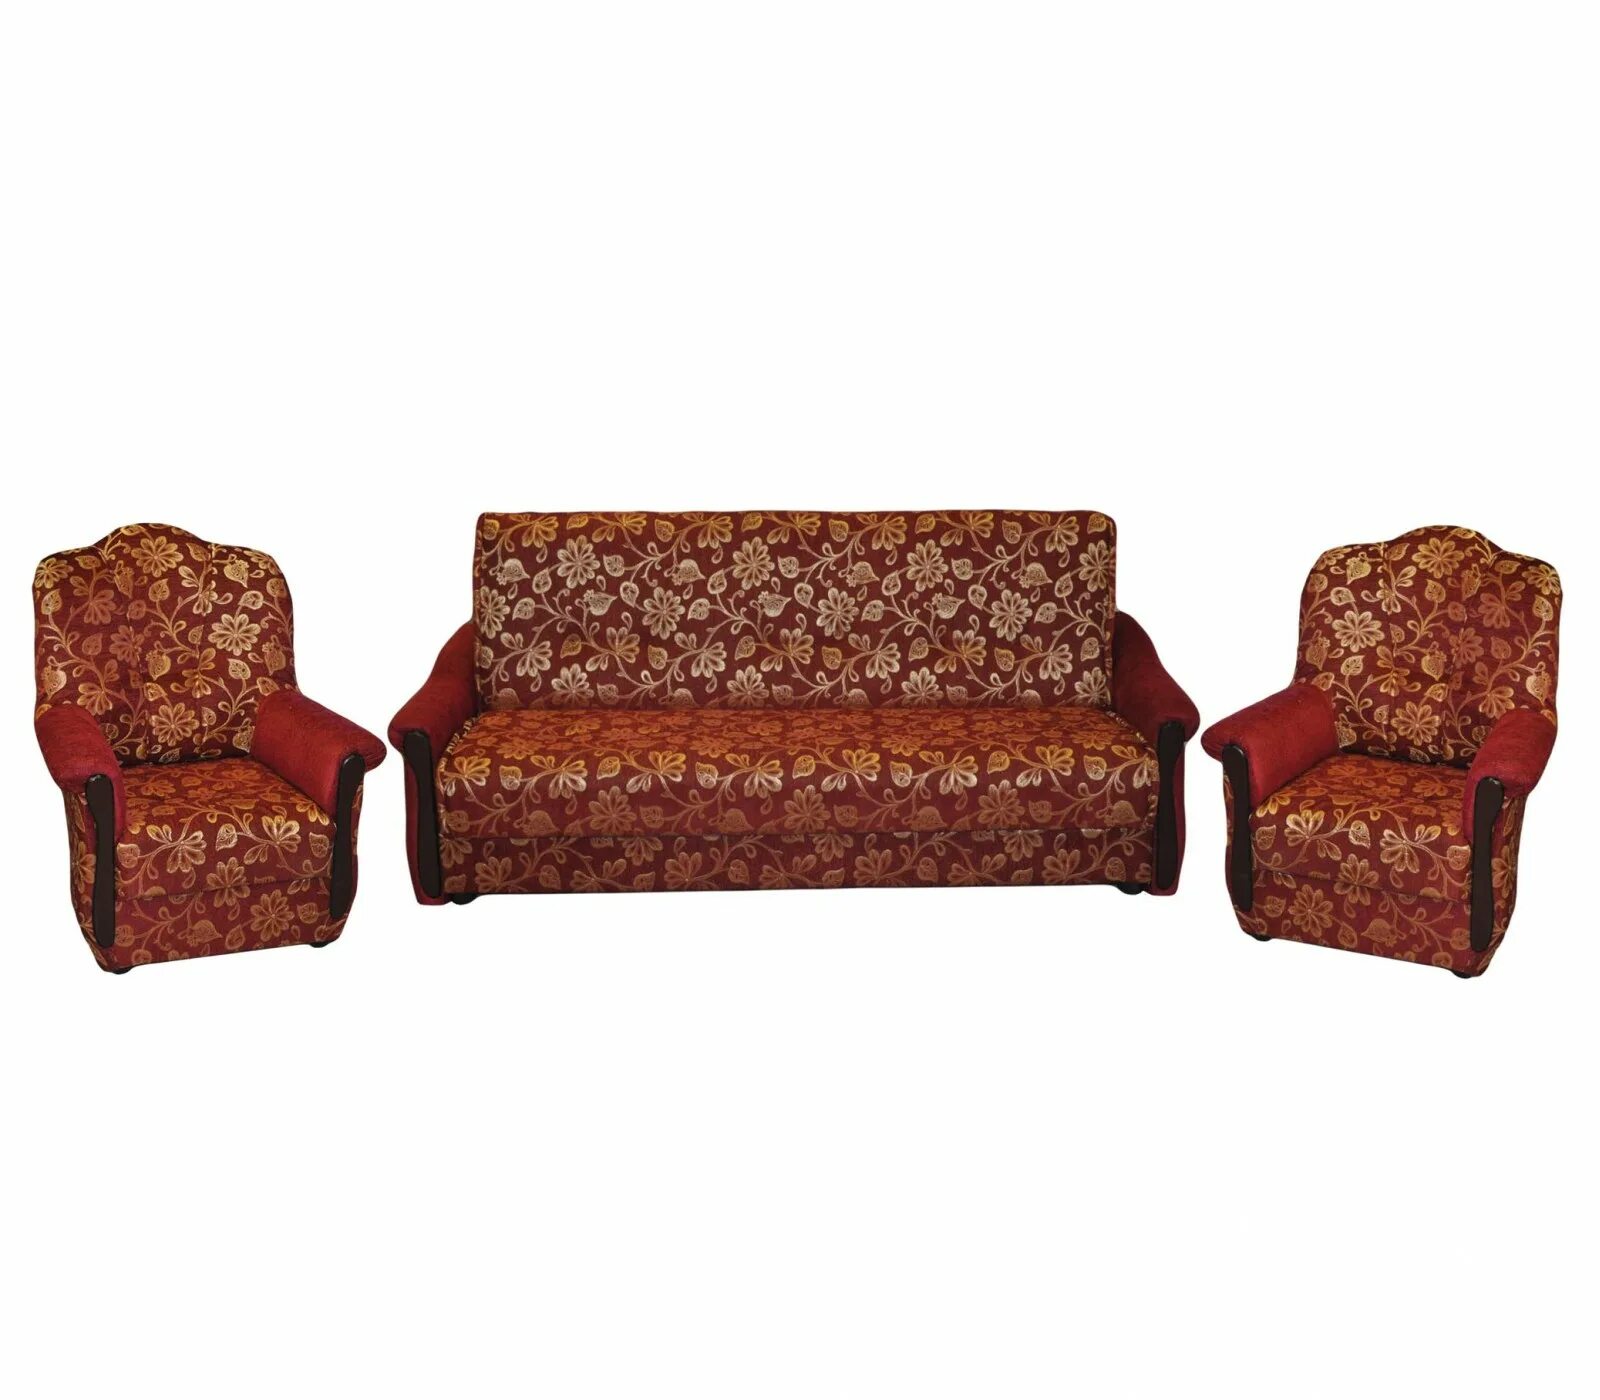 Комплект (софа + 2 кресла) Cezar. Диван и кресло комплект. Набор мягкой мебели диван и кресло. Комплект мягкой мебели диван и 2 кресла.